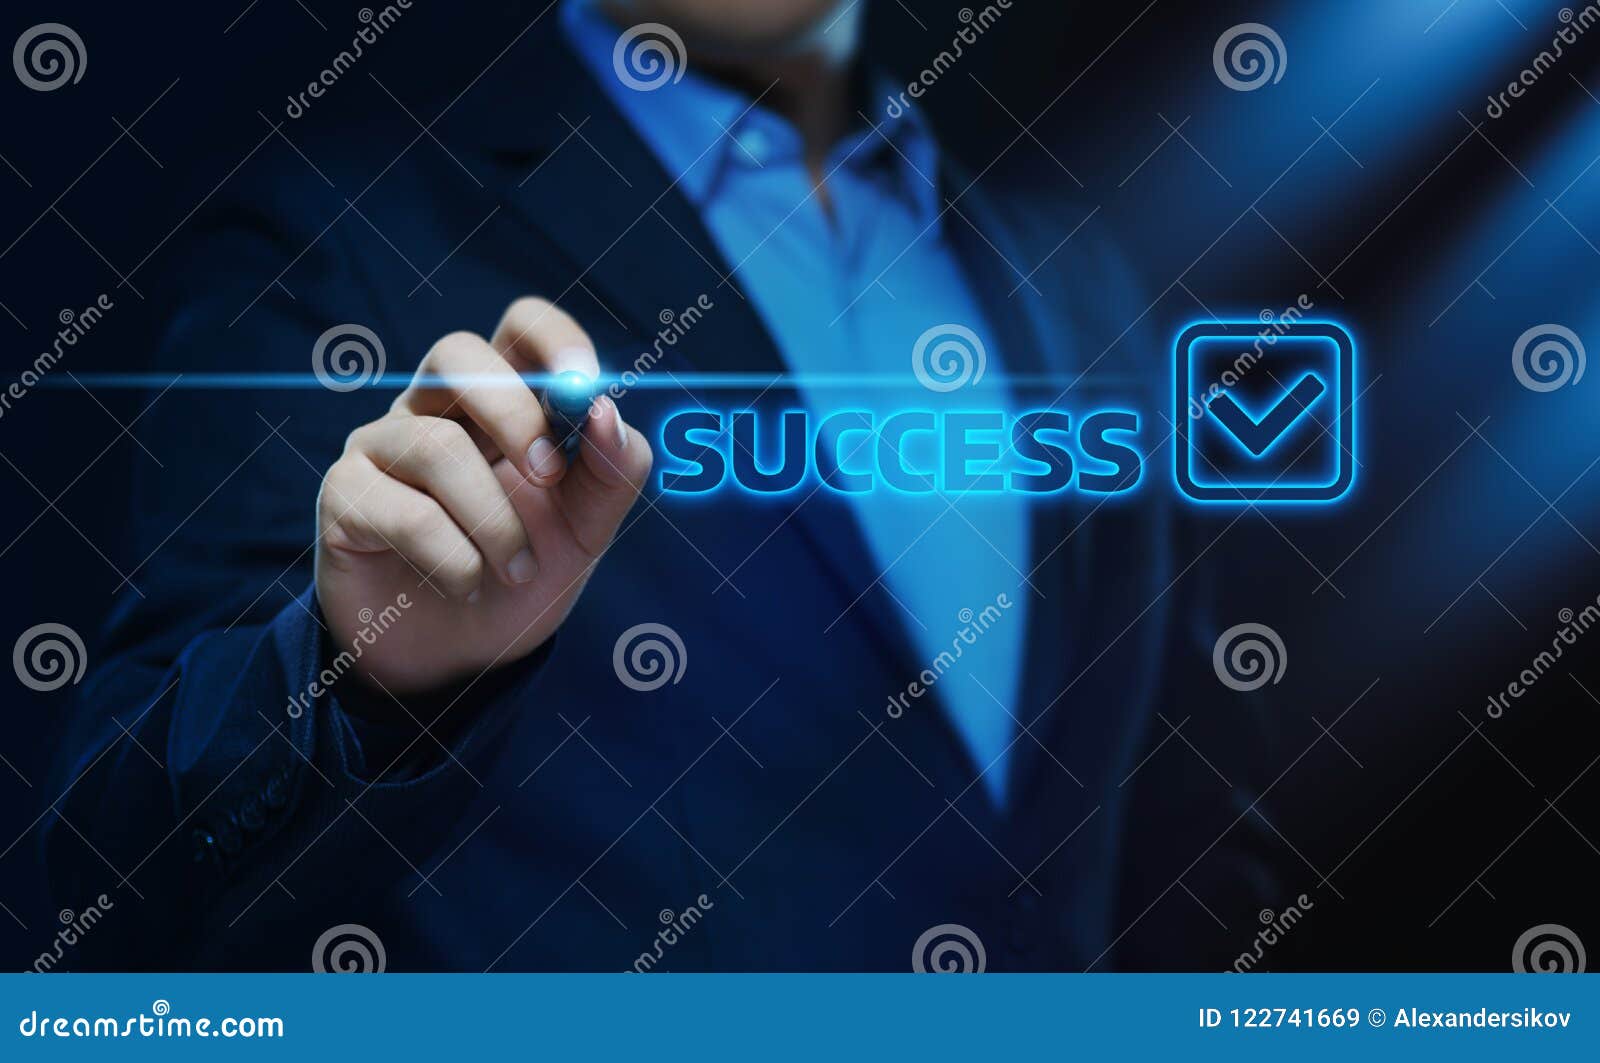 success achievement positive result business finance concept